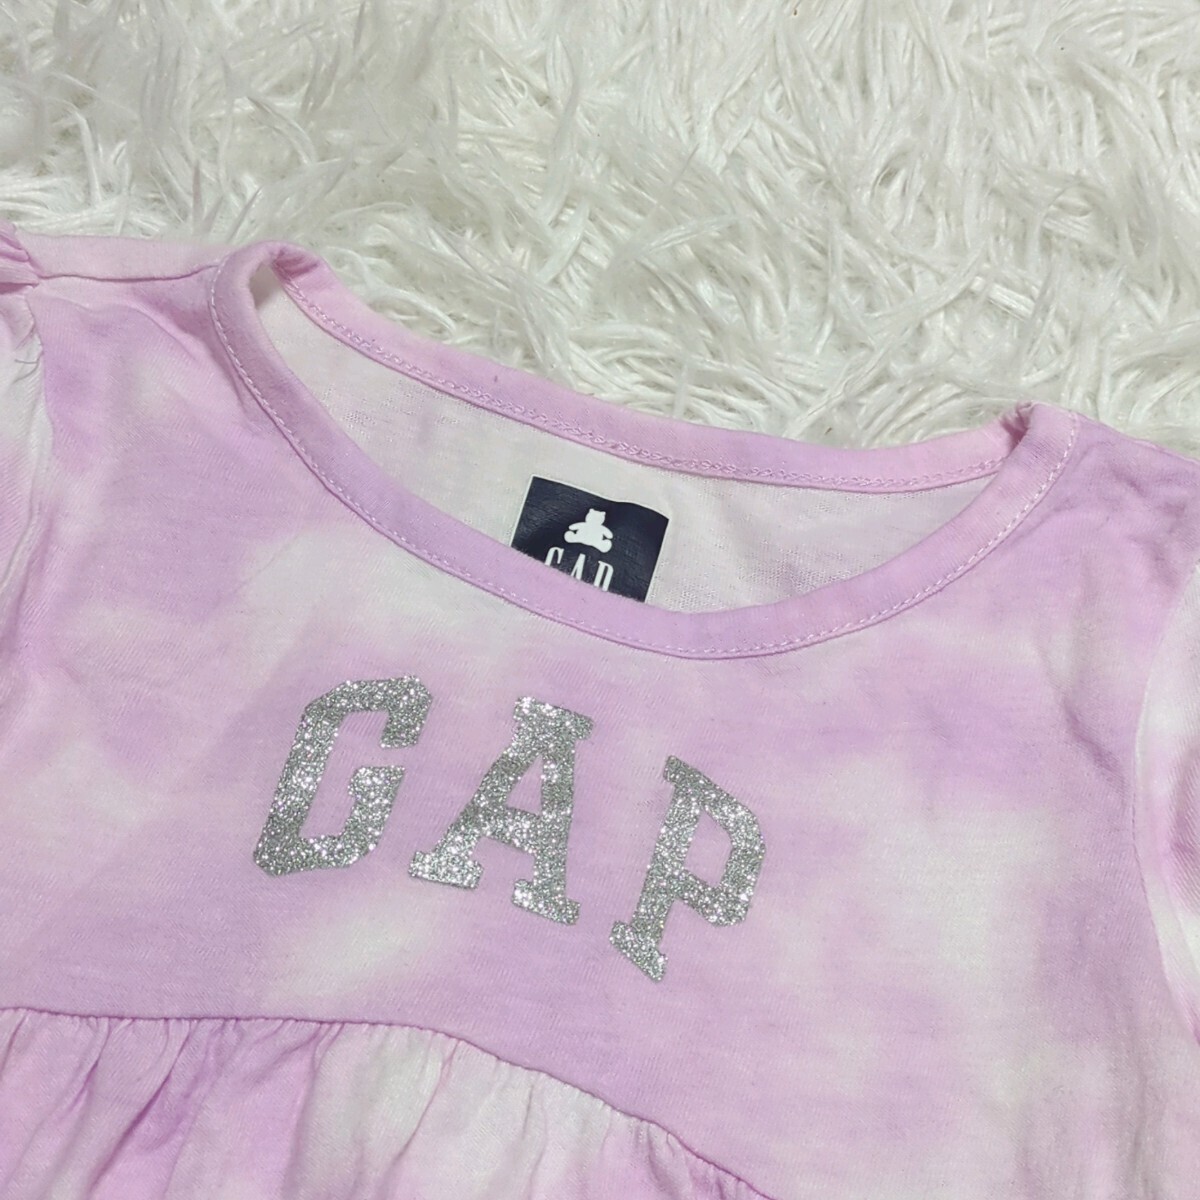 [ бесплатная доставка ]babygap baby Gap футболка tops 90cm Logo baby ребенок одежда 